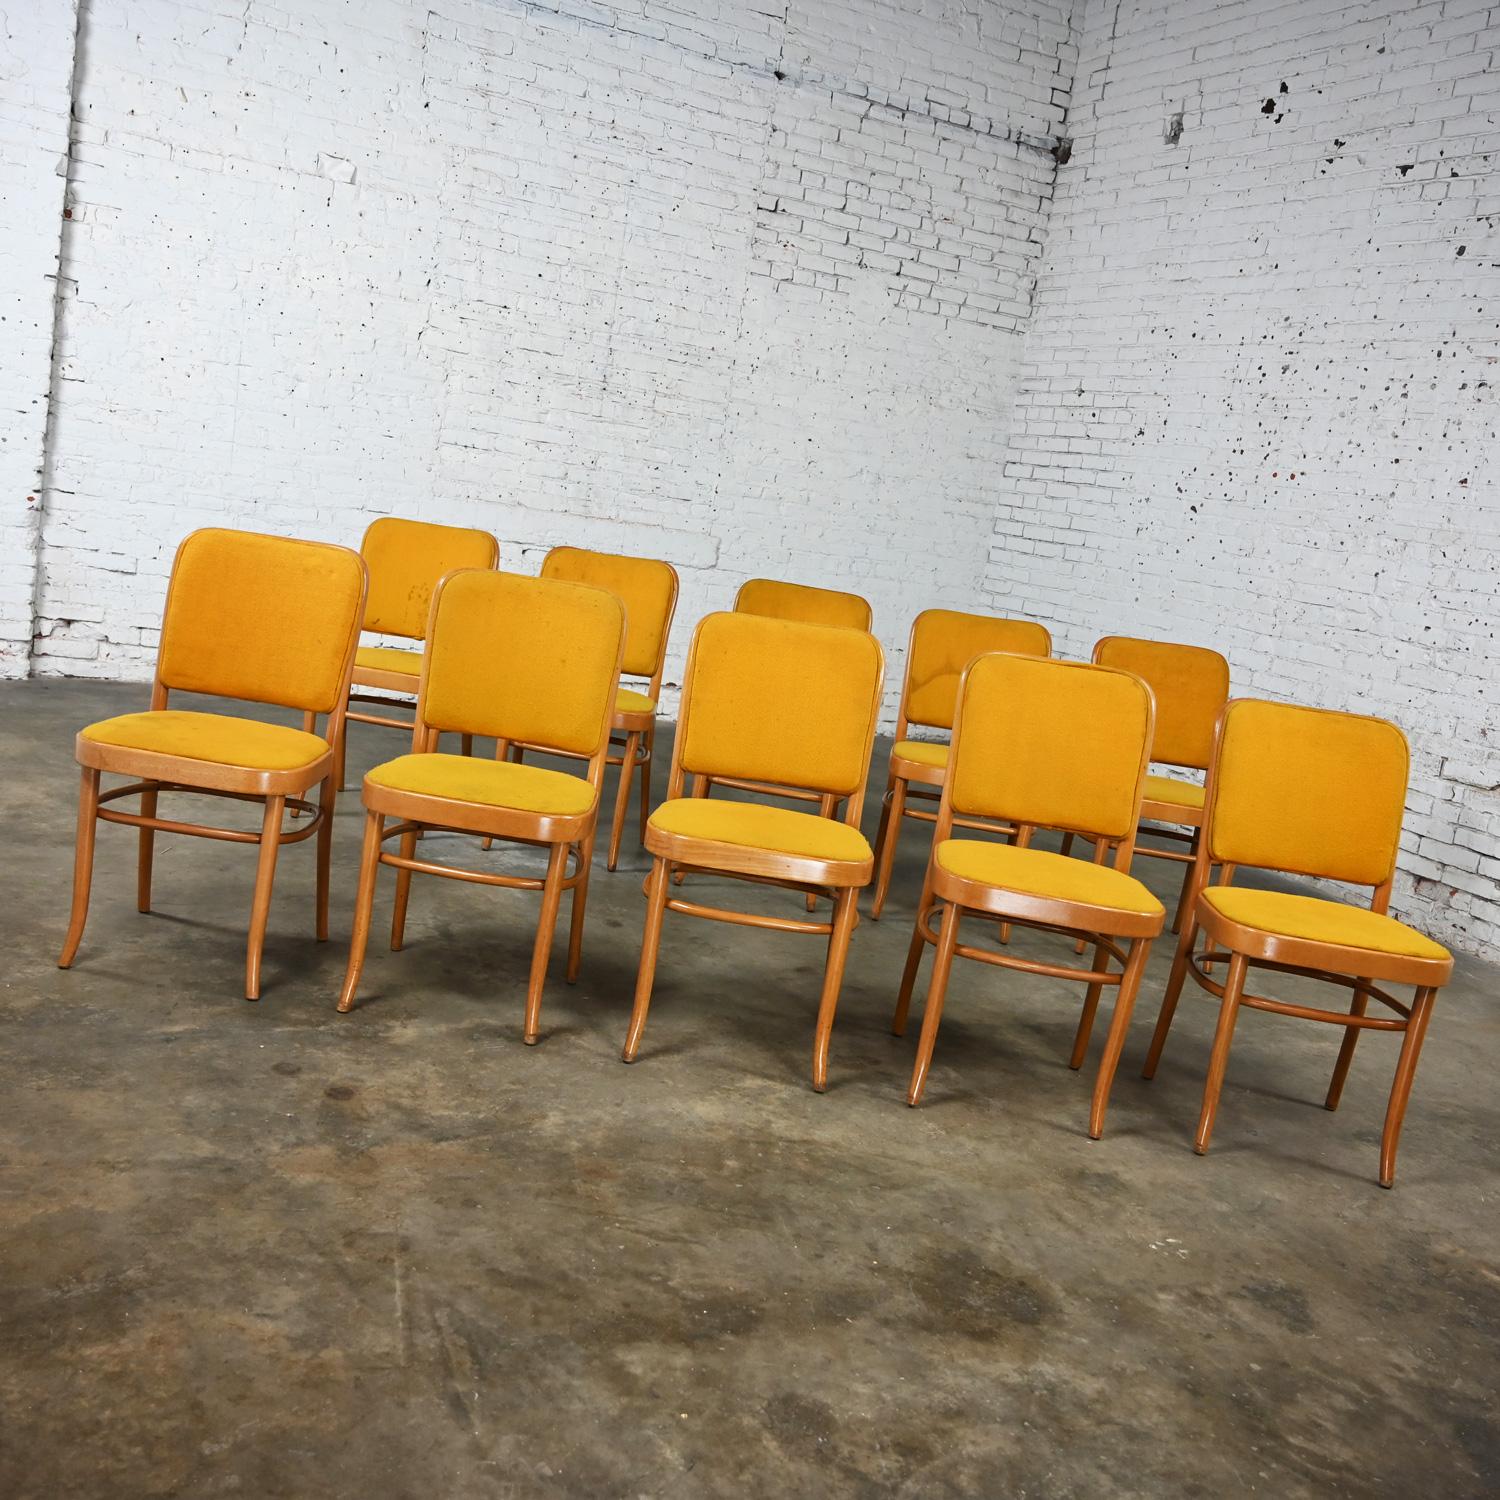 Merveilleuses chaises de salle à manger sans accoudoirs en hêtre courbé de style Thonet Josef Hoffman Prague 811 par Falcon Products Inc, lot de 10. Byit, en gardant à l'esprit qu'il s'agit d'une pièce vintage et non pas neuve, qui présentera donc